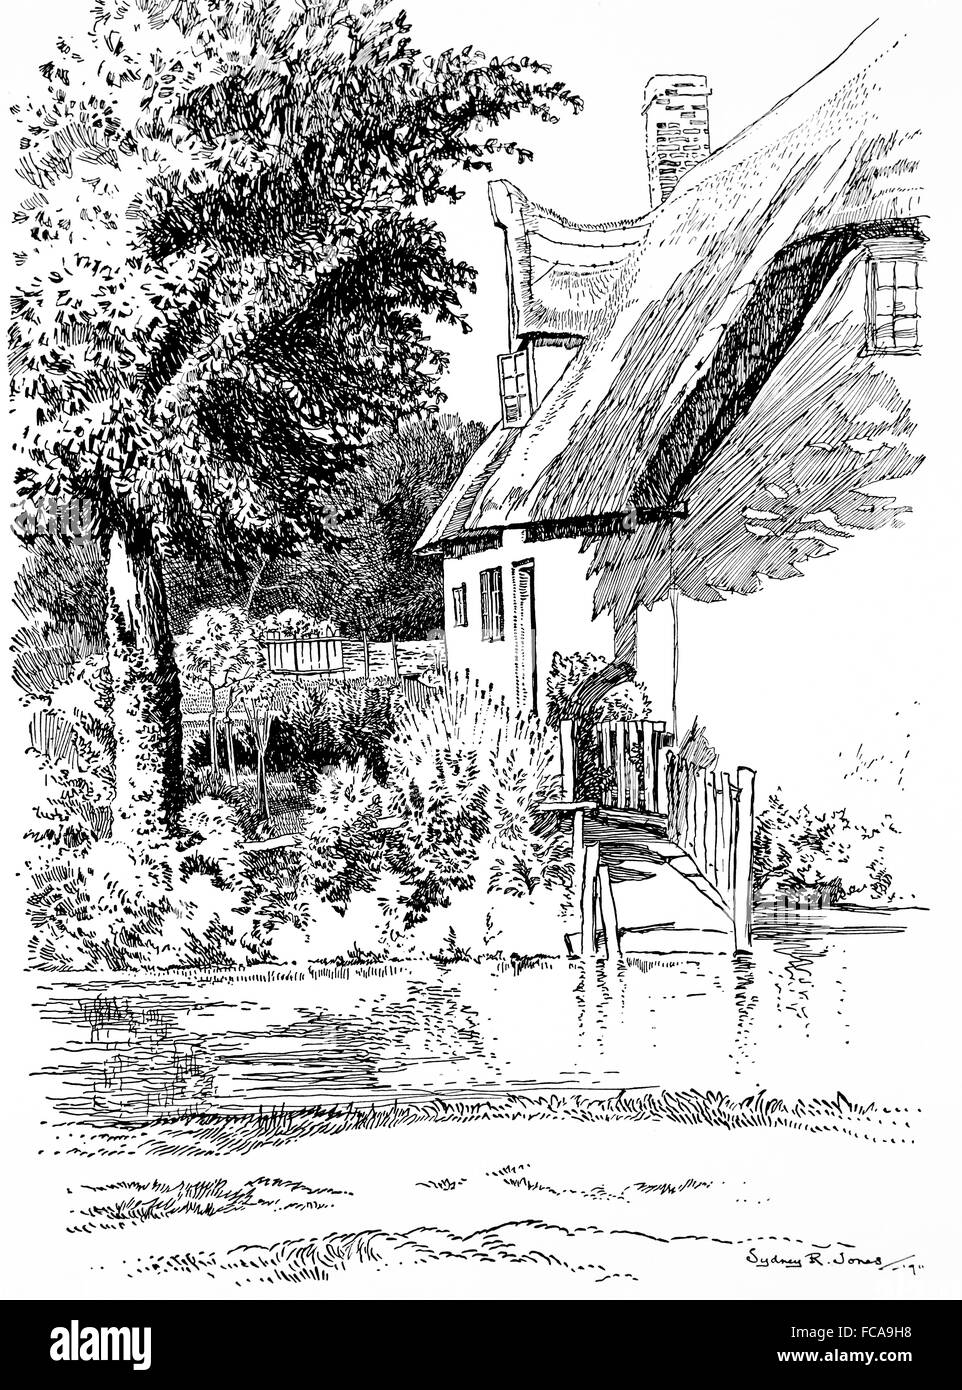 Regno Unito, Inghilterra, Cambridgeshire, Shepreth, cottage con il tetto di paglia, angolo Lane, Fiume Shep nel1911, illustrazione di linea da, Sydney R Jones Foto Stock